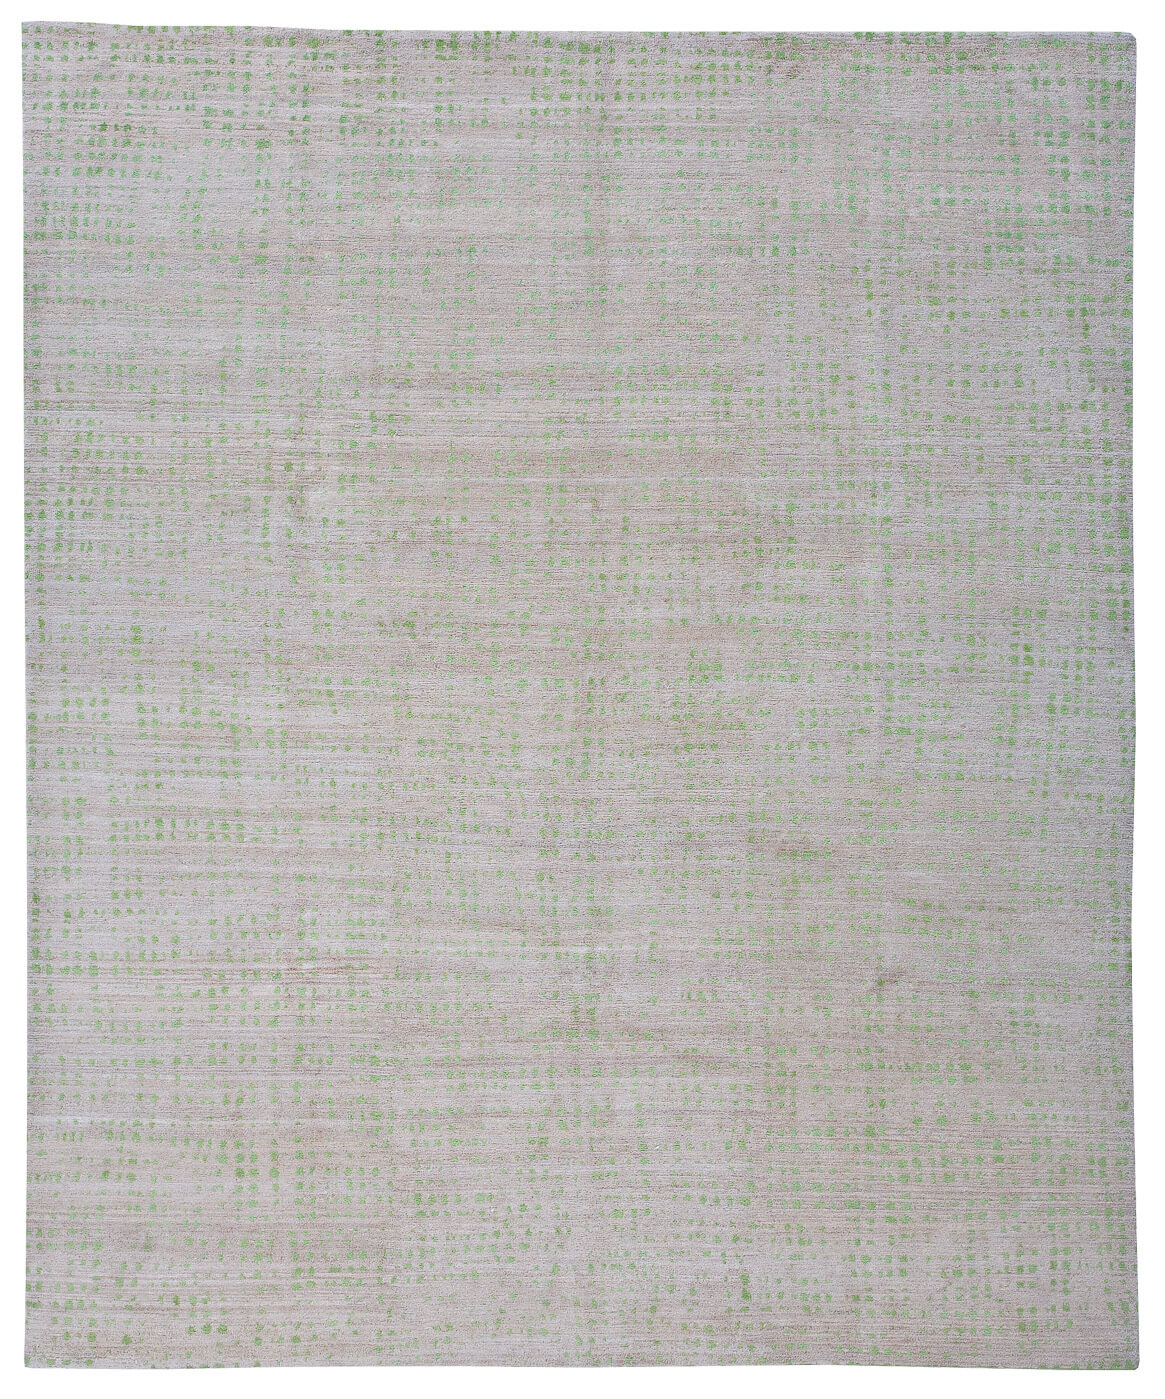 Netzwerk Grey Green Luxury Hand-woven Rug ☞ Size: 250 x 300 cm